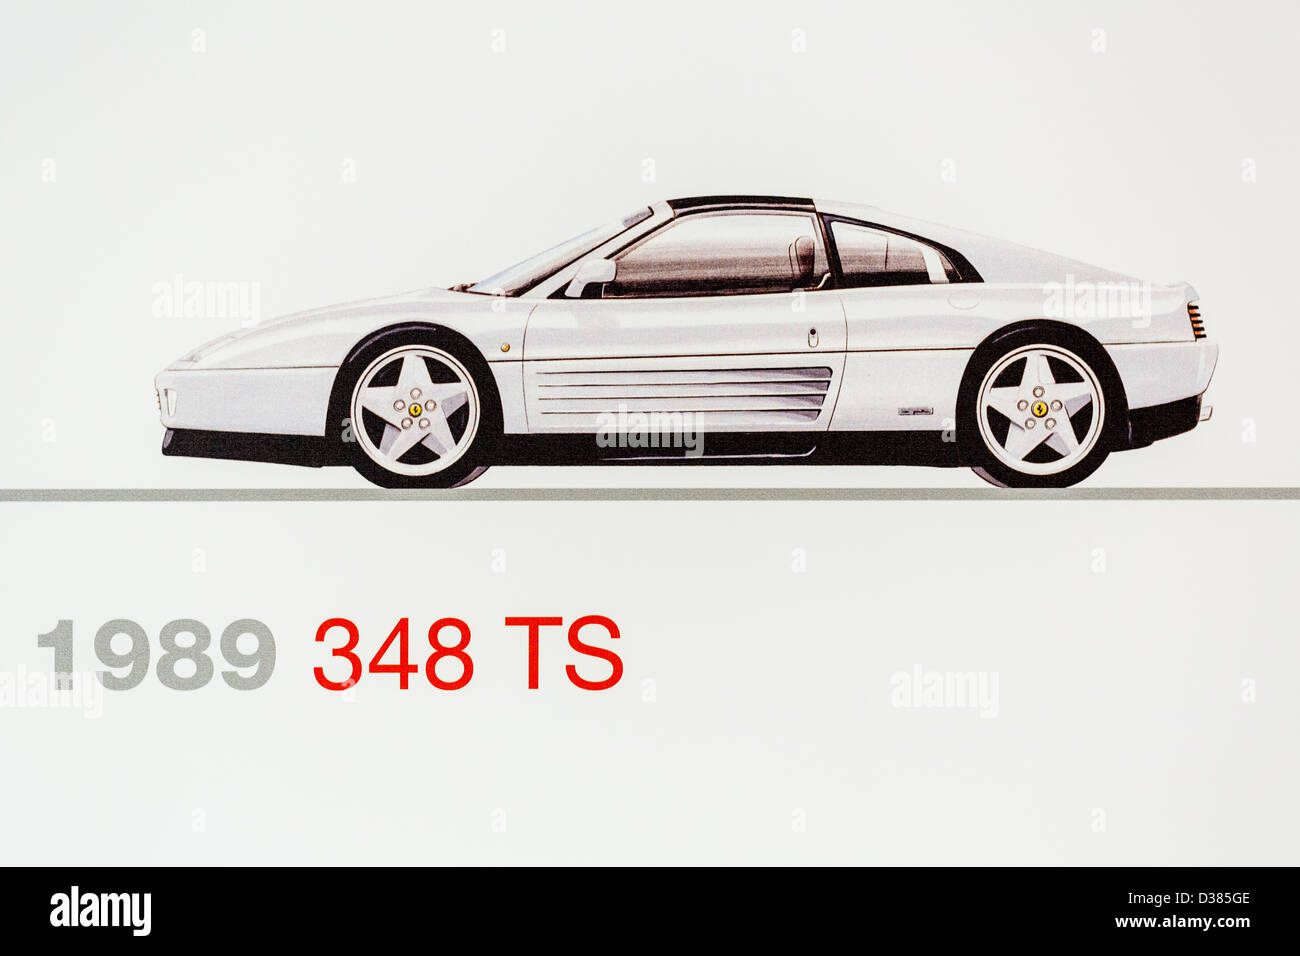 Graphic representation of a 1989 Ferrari 348 TS, Ferrari Museum, Maranello, Italy Stock Photo